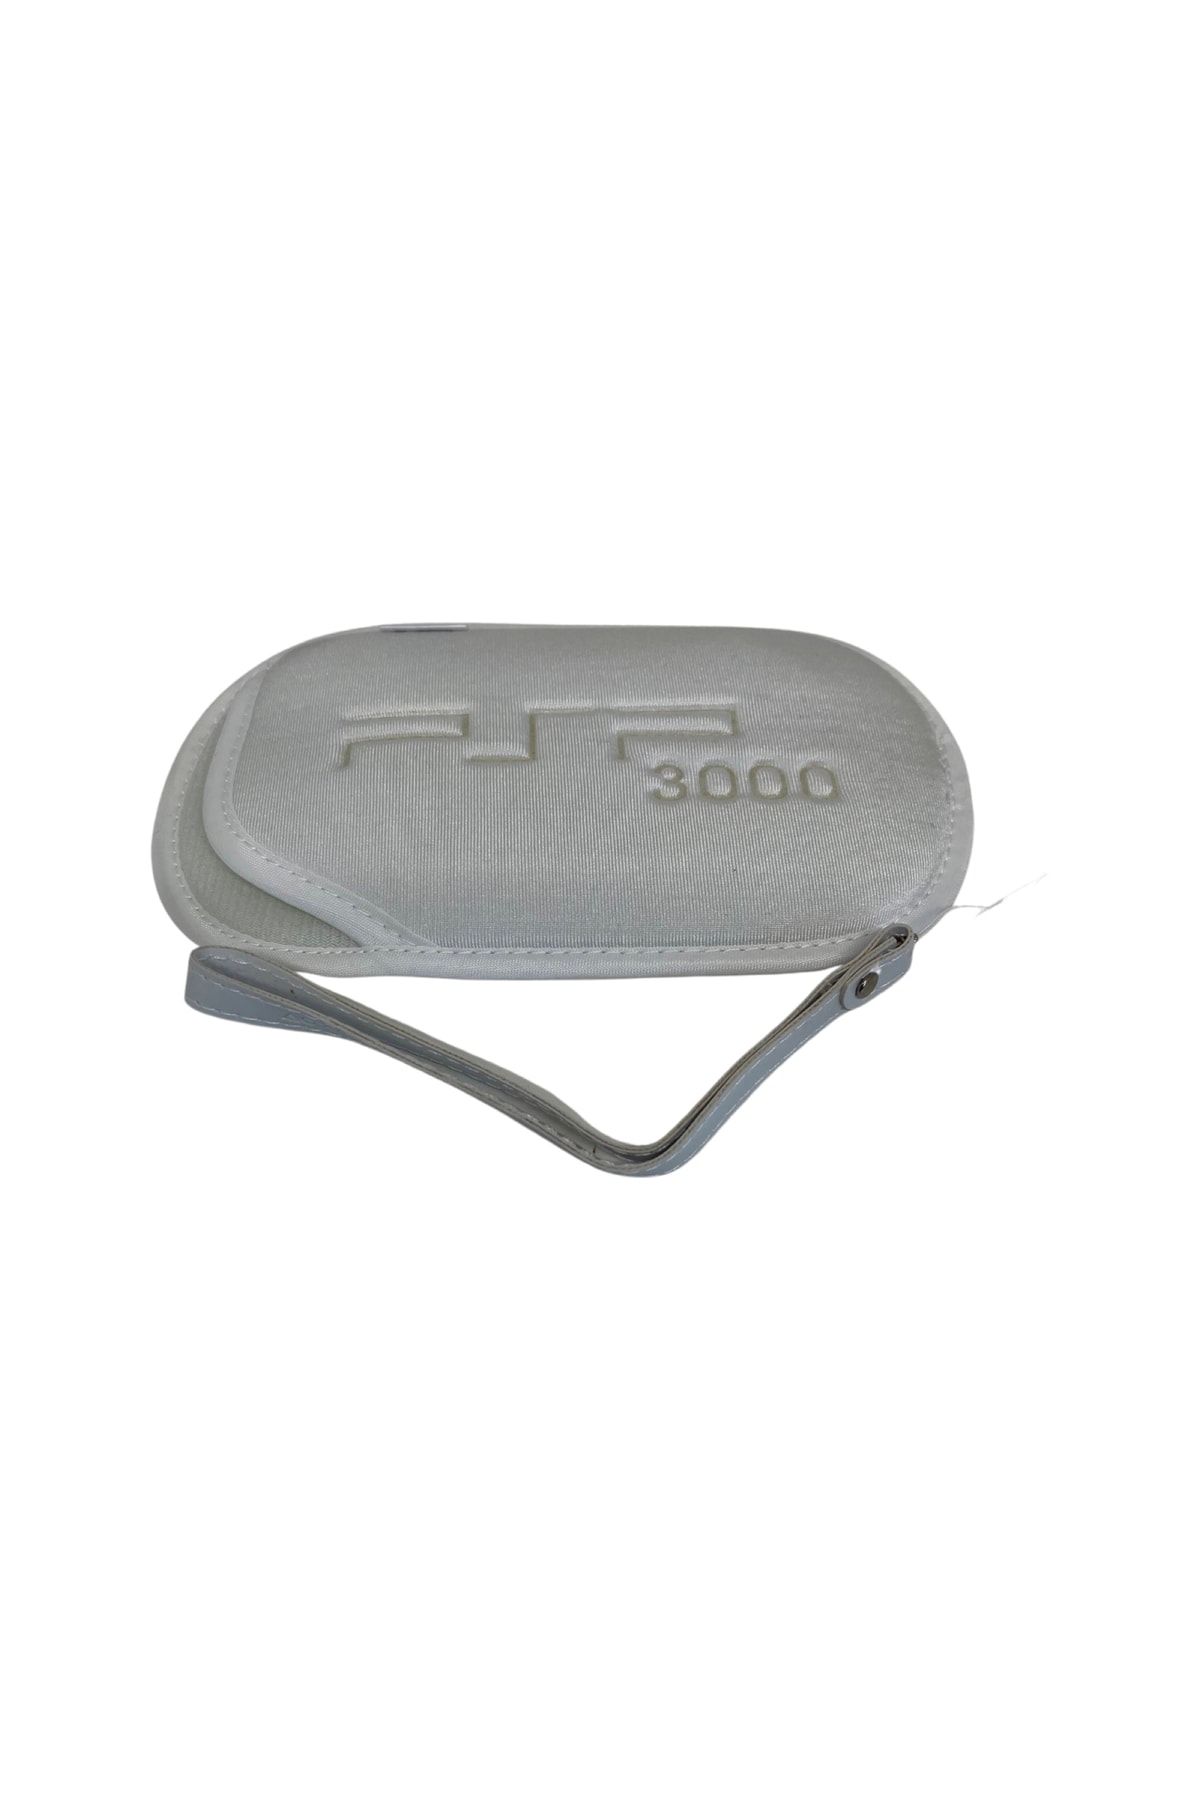 YUES Psp 2000/3000 Soft Çanta Kılıf + Bileklik Beyaz (psp 2000/3000 Uyumlu)